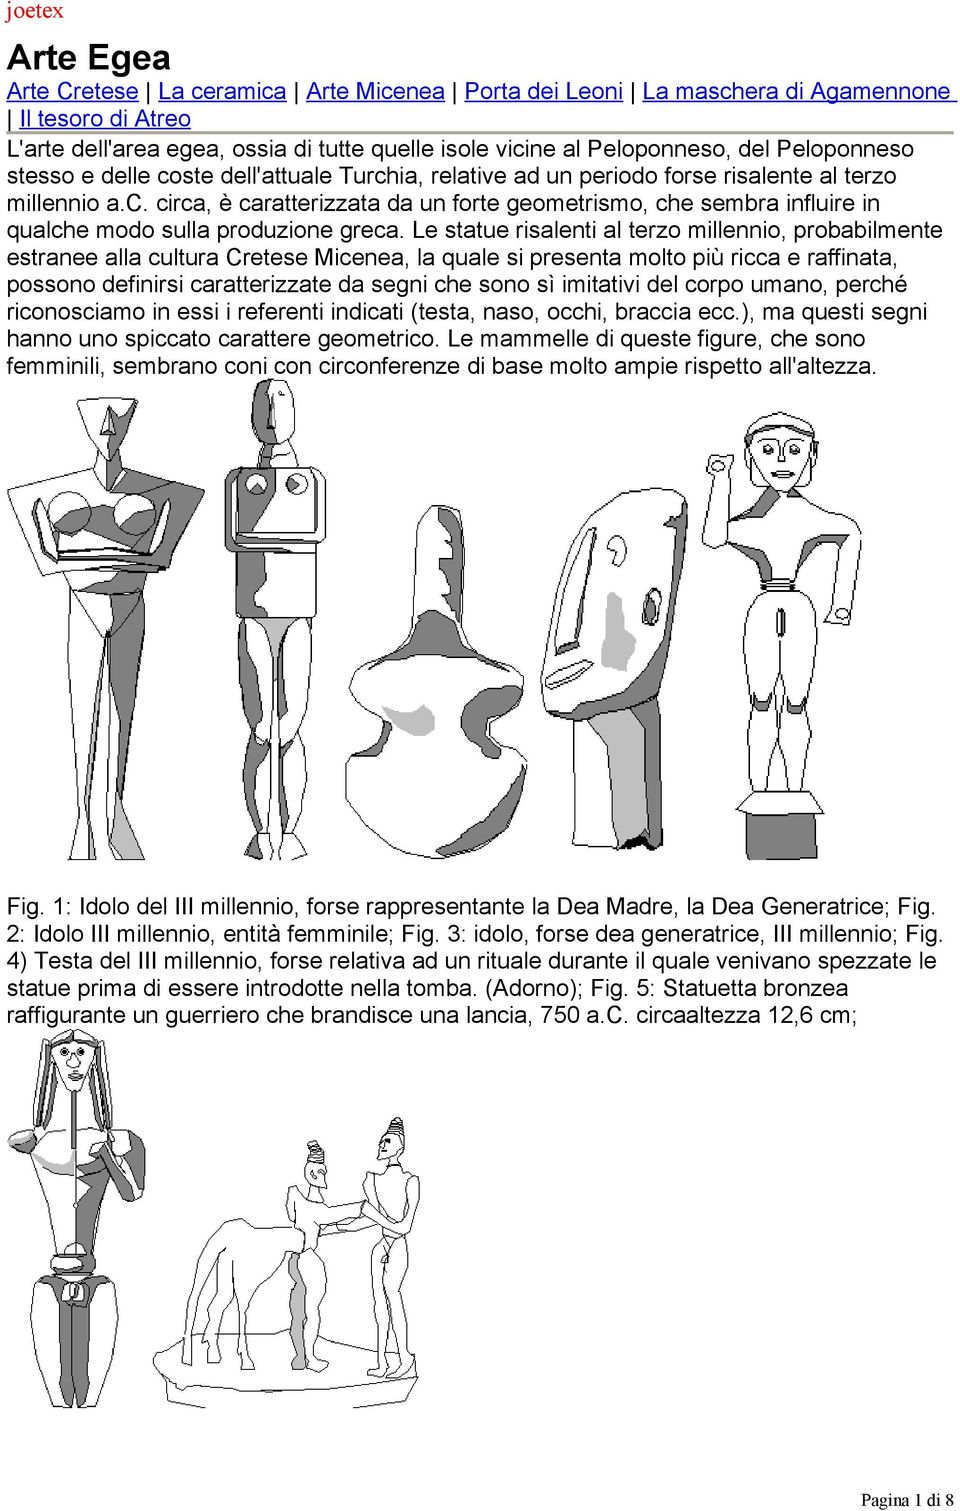 Le statue risalenti al terzo millennio, probabilmente estranee alla cultura Cretese Micenea, la quale si presenta molto più ricca e raffinata, possono definirsi caratterizzate da segni che sono sì